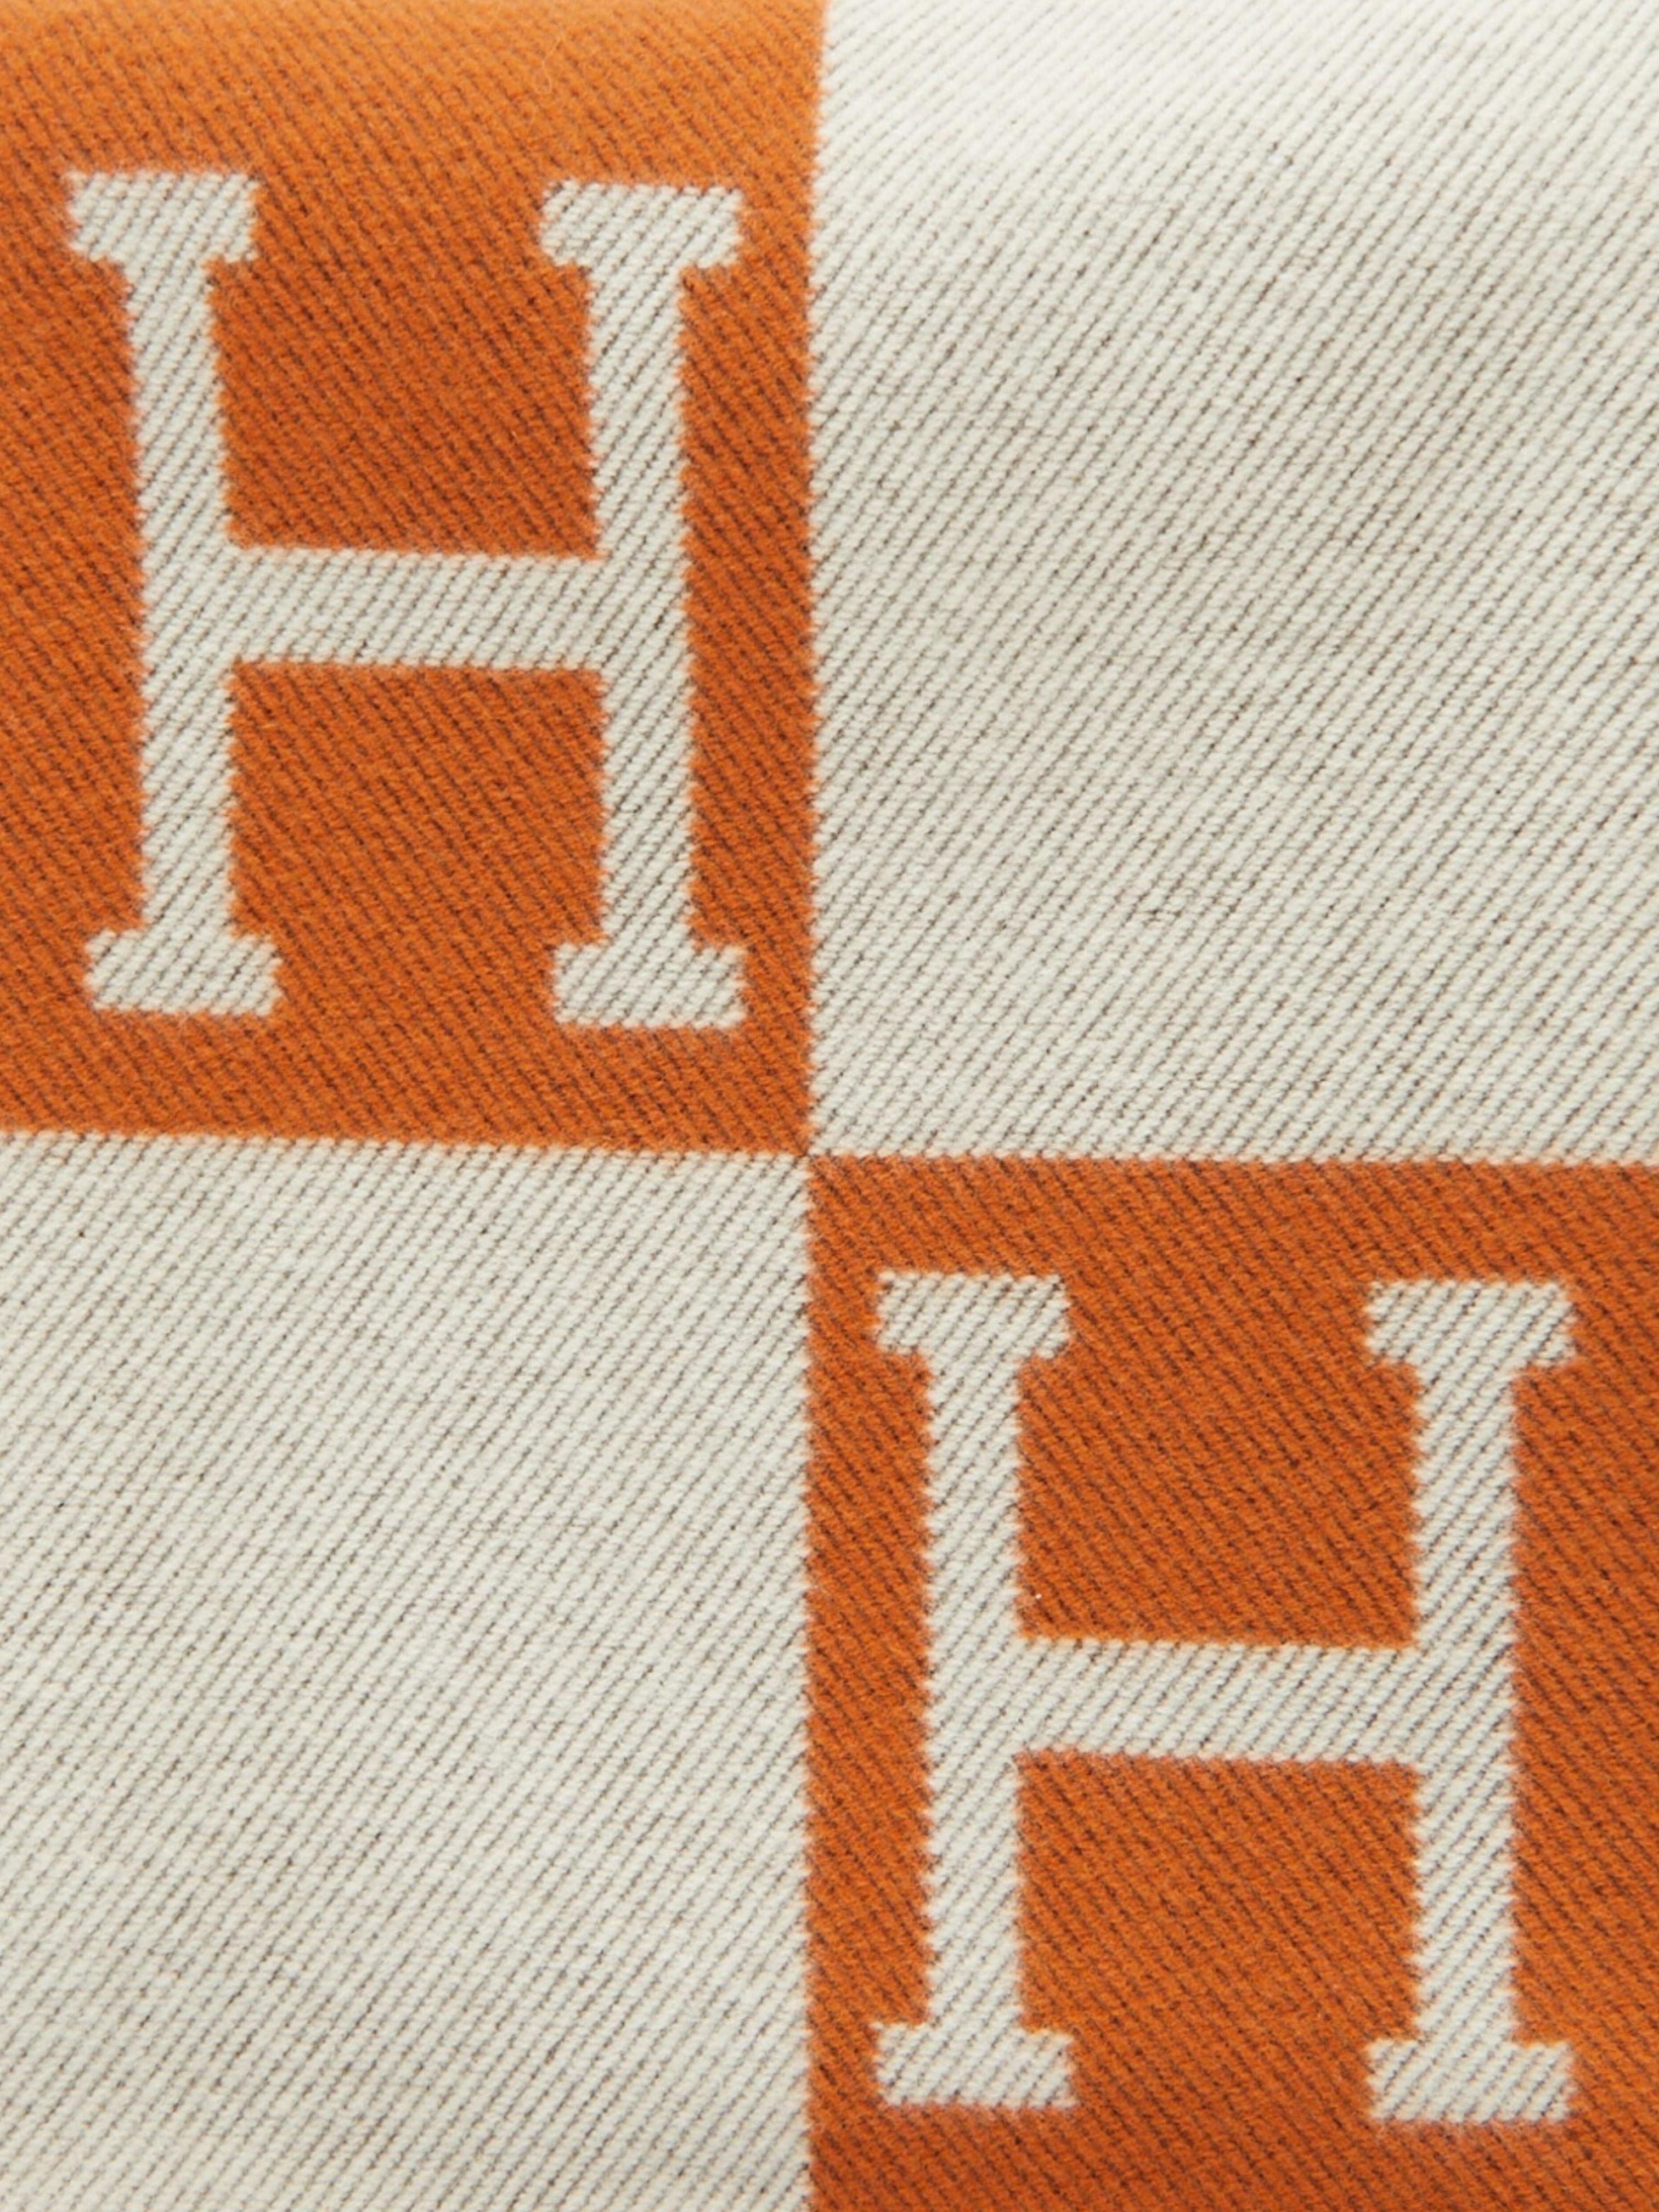 Hermès Avalon Bettdecke aus Merinowolle und Kaschmir (90% Merinowolle, 10% Kaschmir)

Ecru/Poitron

Hergestellt in Großbritannien

Abmessungen: L 135 x H 170 cm 